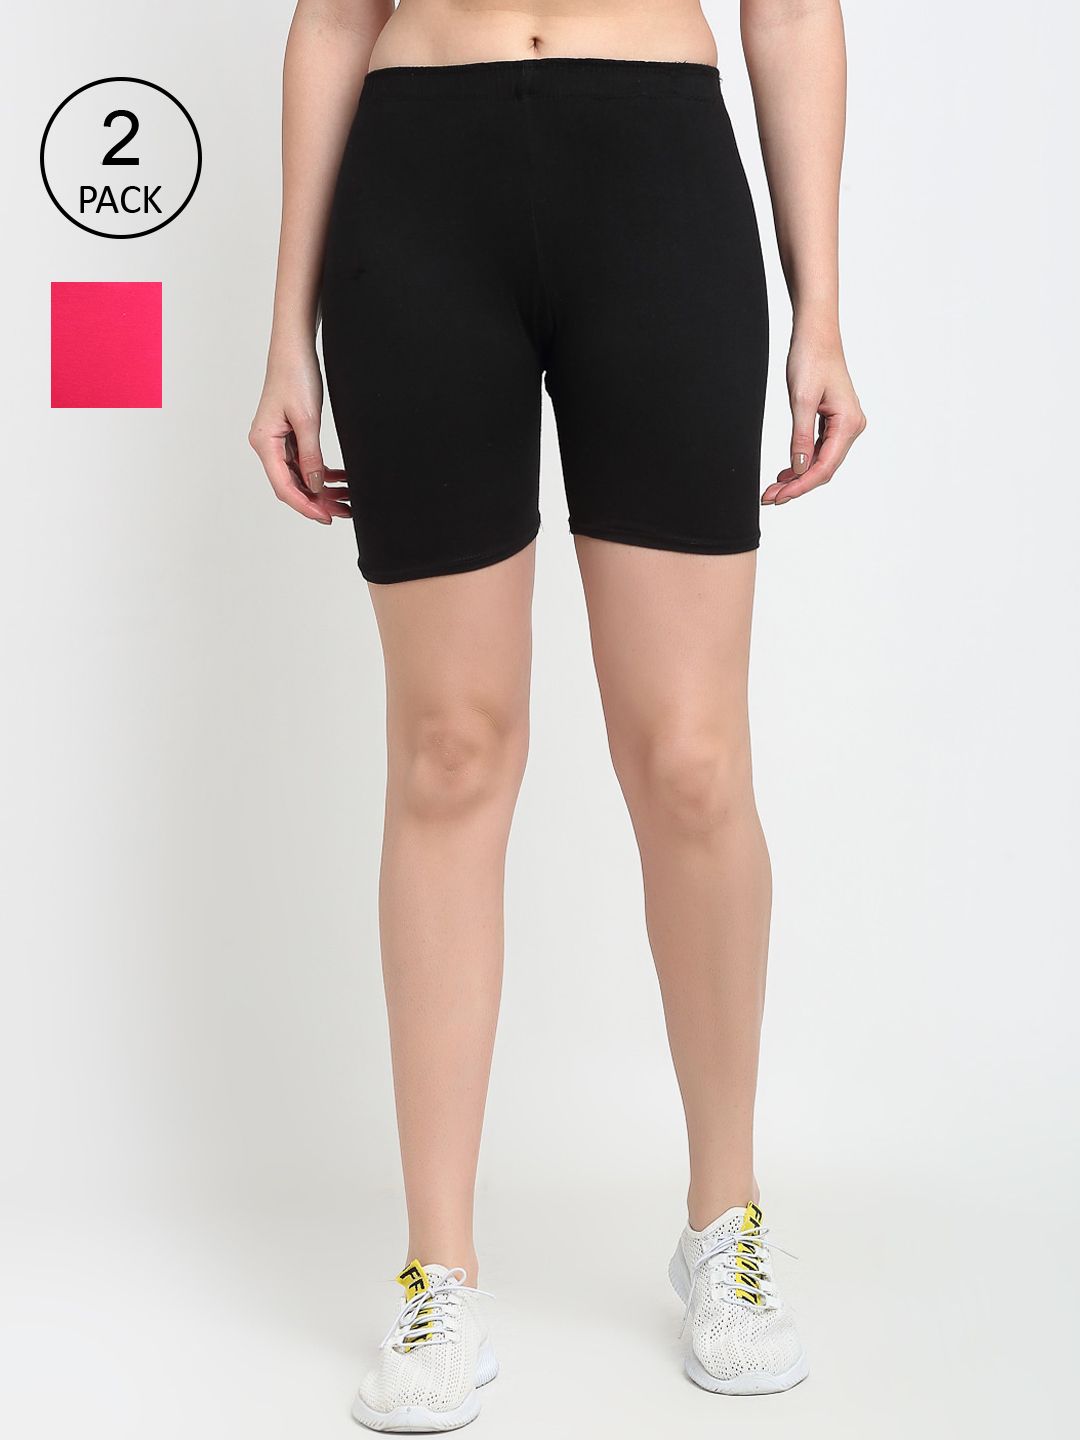 GRACIT Women Black & Pink Set Of 2 Biker Shorts Price in India